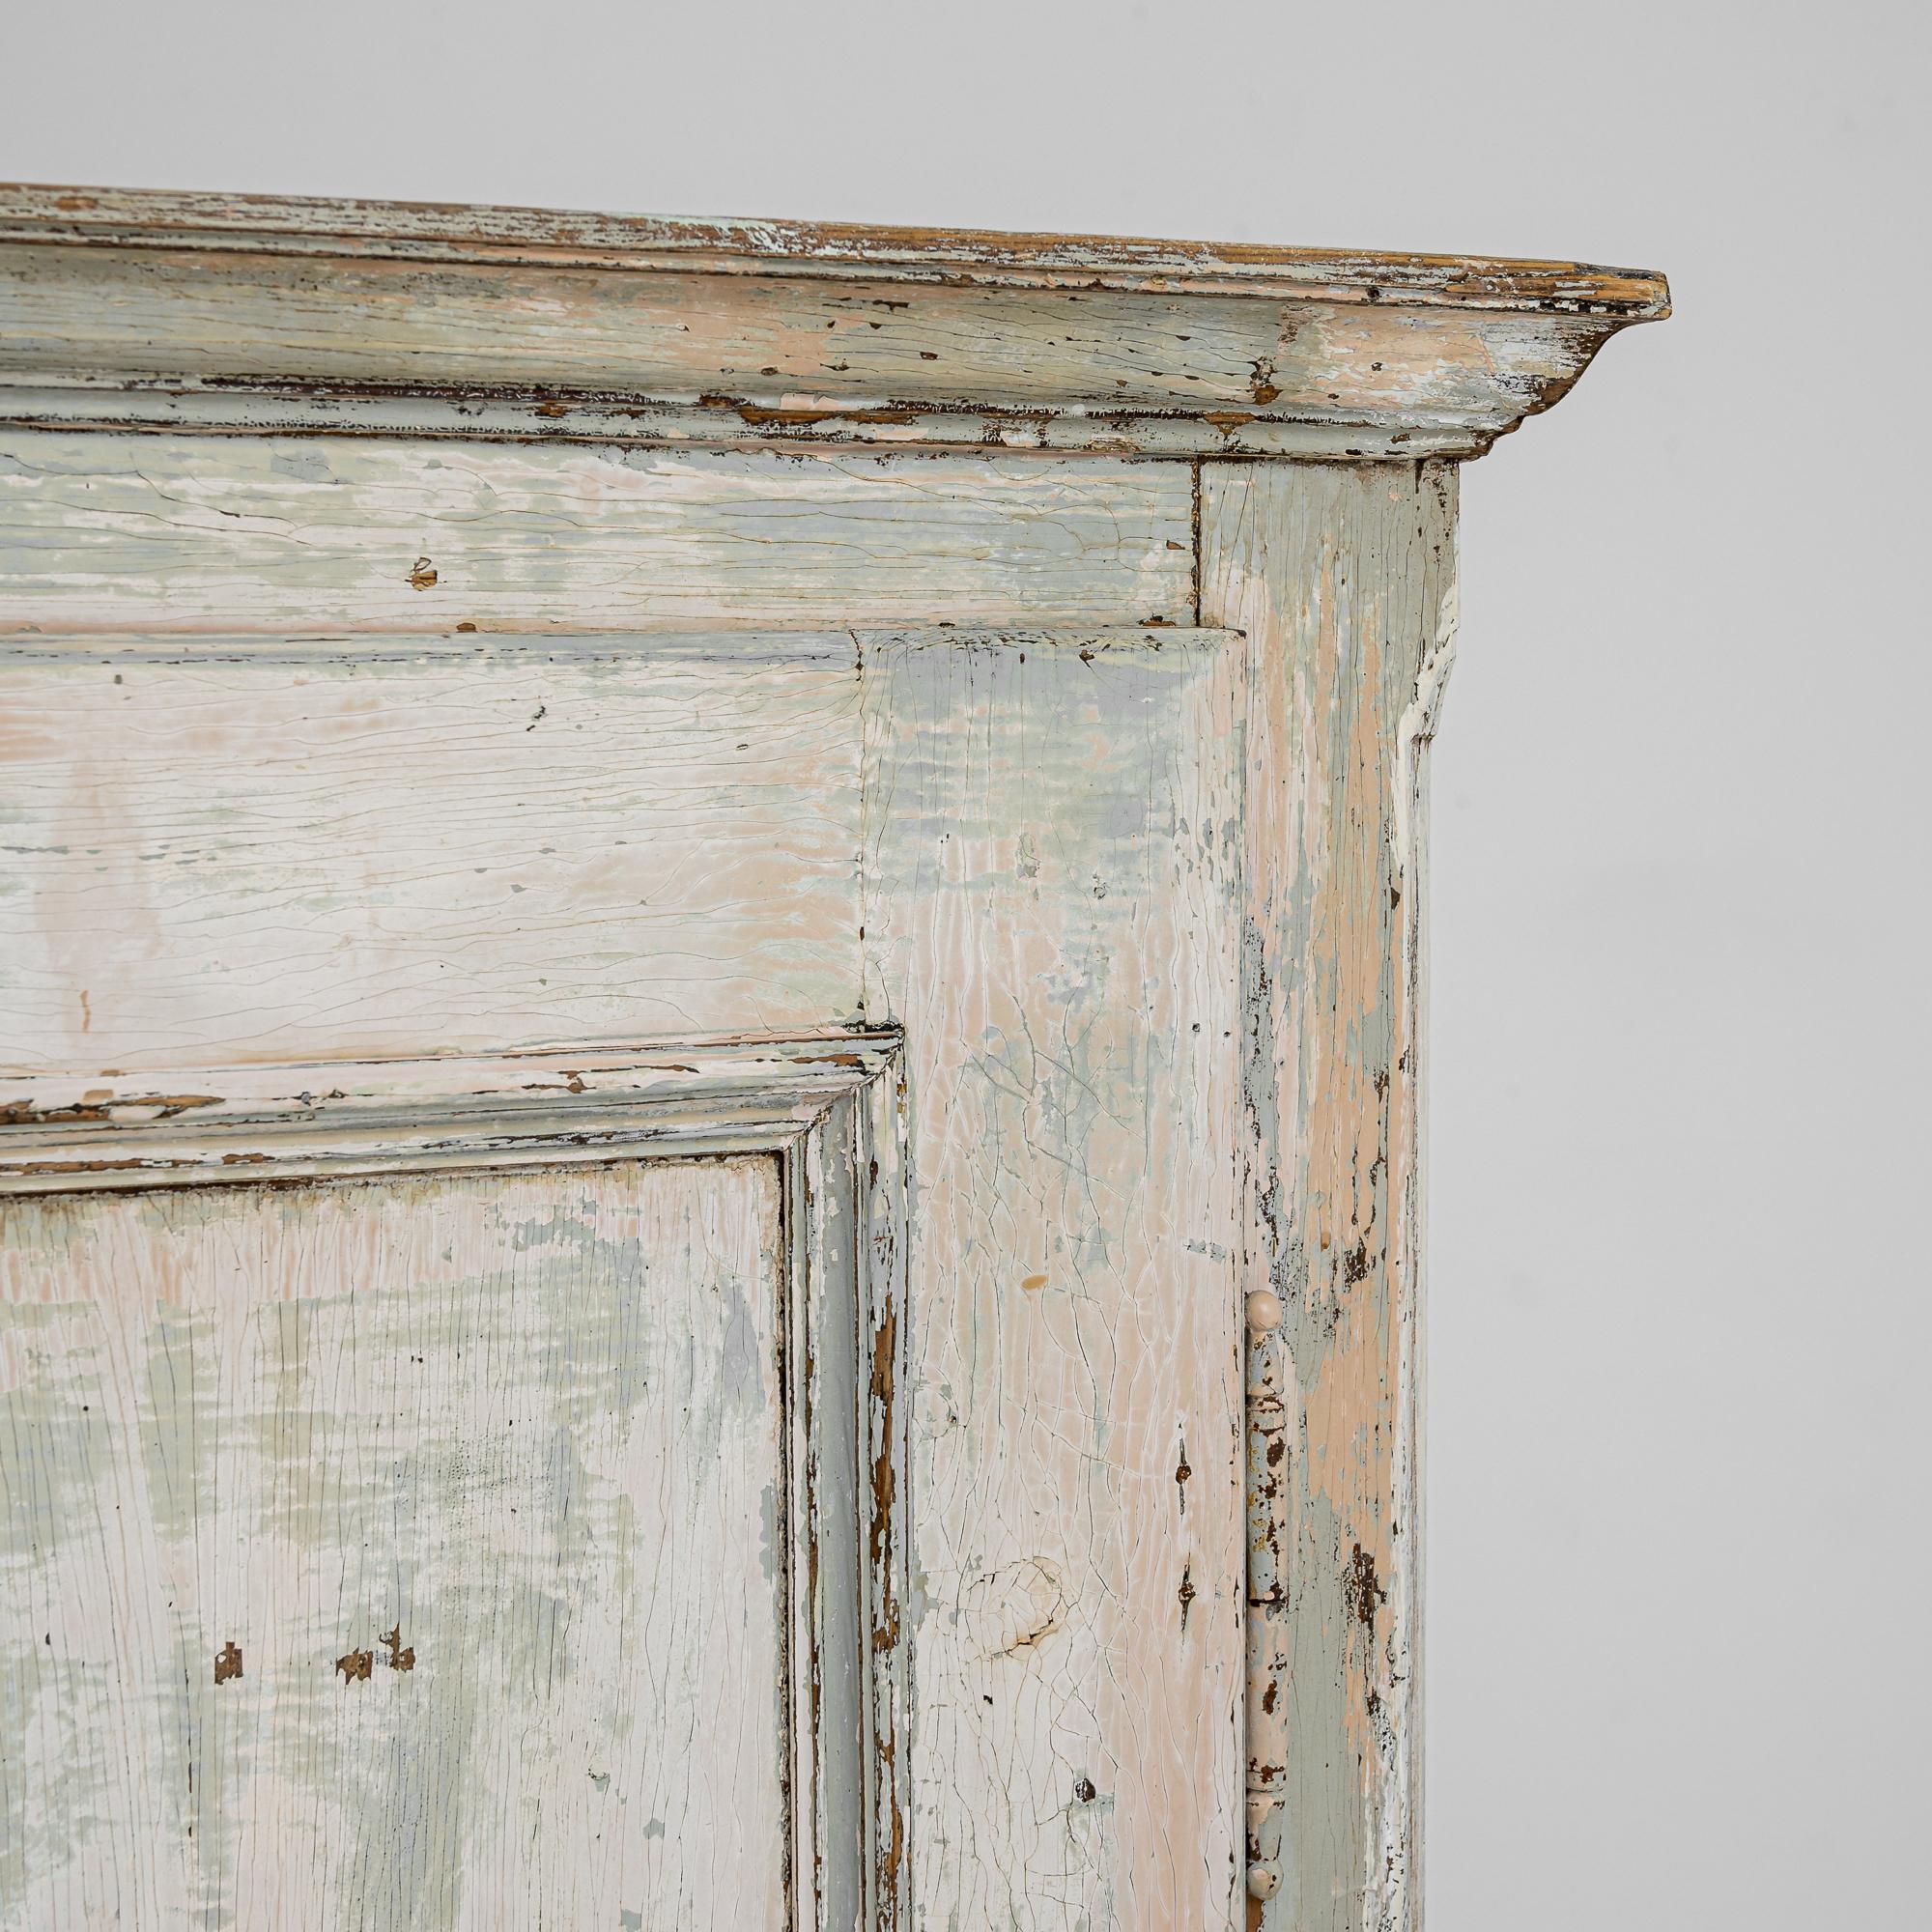 Ce meuble en bois ancien associe une silhouette champêtre simple à une palette de couleurs douces pour un résultat charmant. Fabriquée en Europe centrale au XIXe siècle, une grille métallique circulaire au centre de la porte de l'armoire indique que